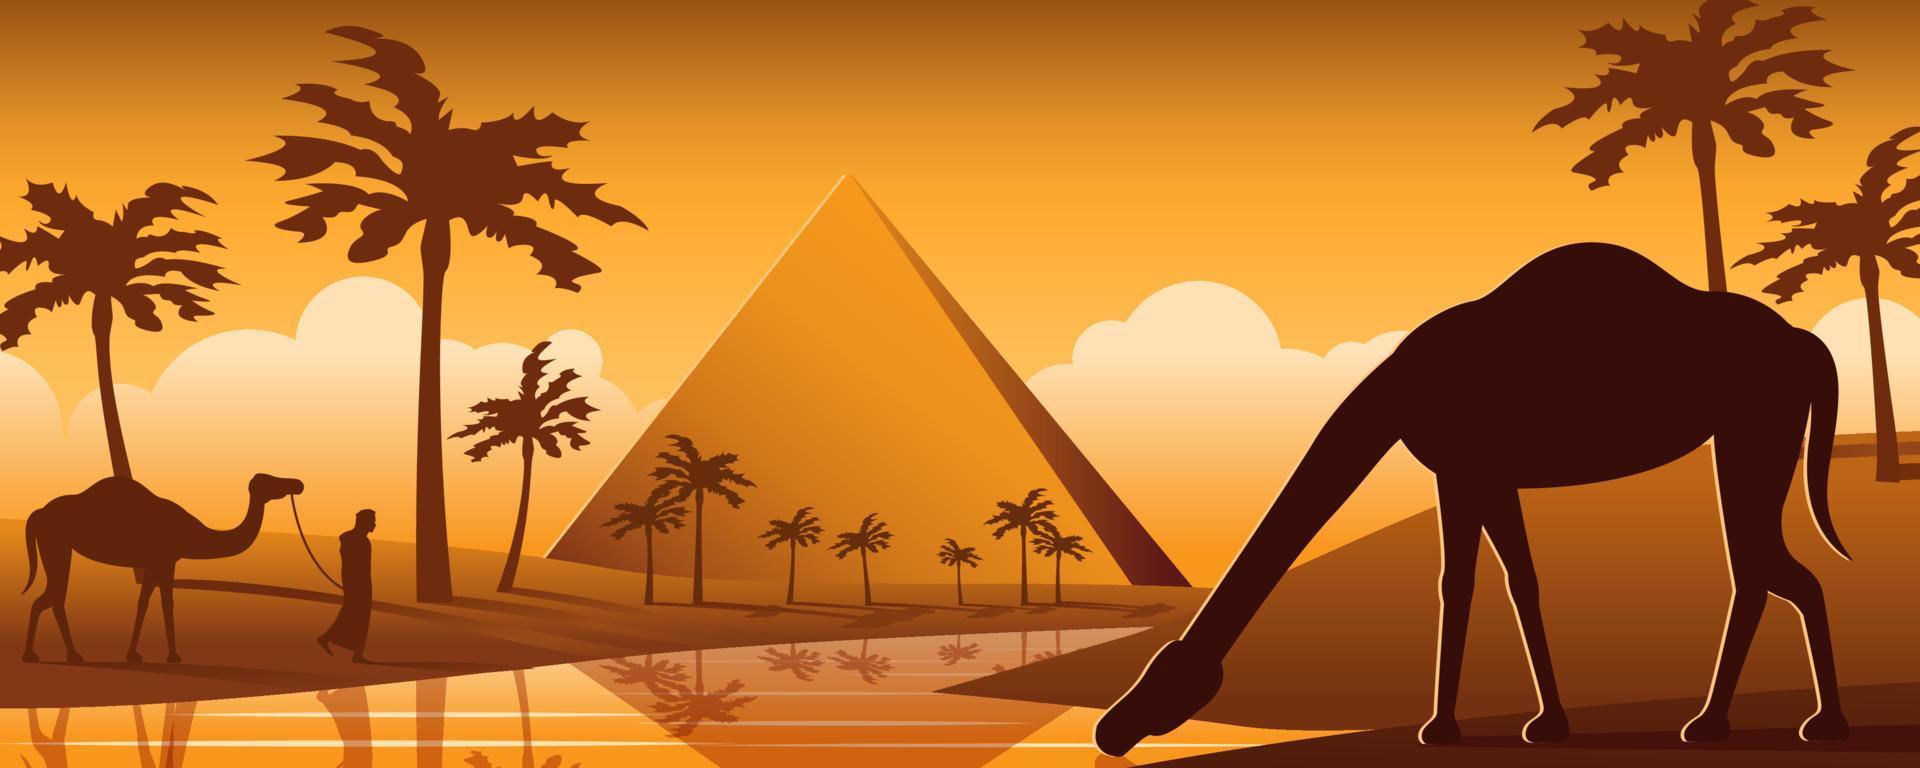 camello bebe agua en el desierto de oasis cerca de la pirámide, diseño de dibujos animados de silueta vector